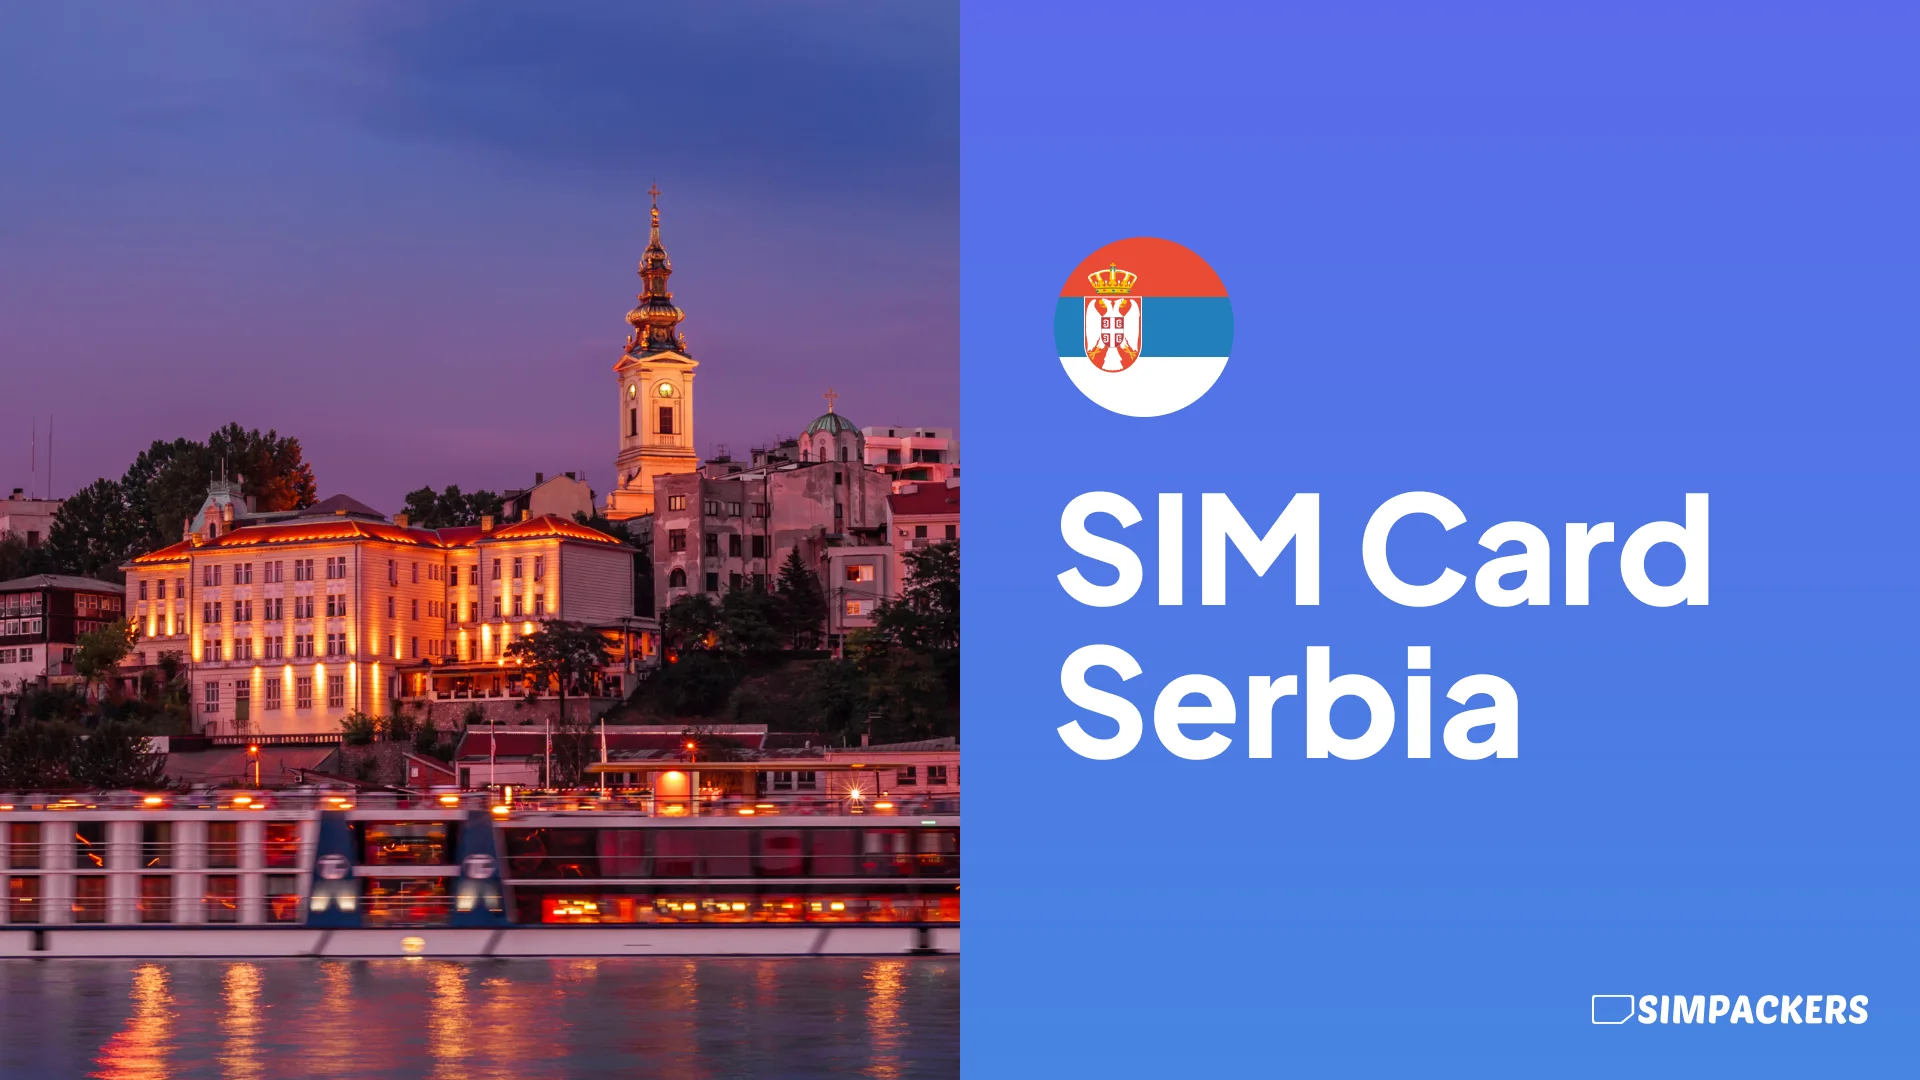 EN/FEATURED_IMAGES/sim-card-serbia.webp